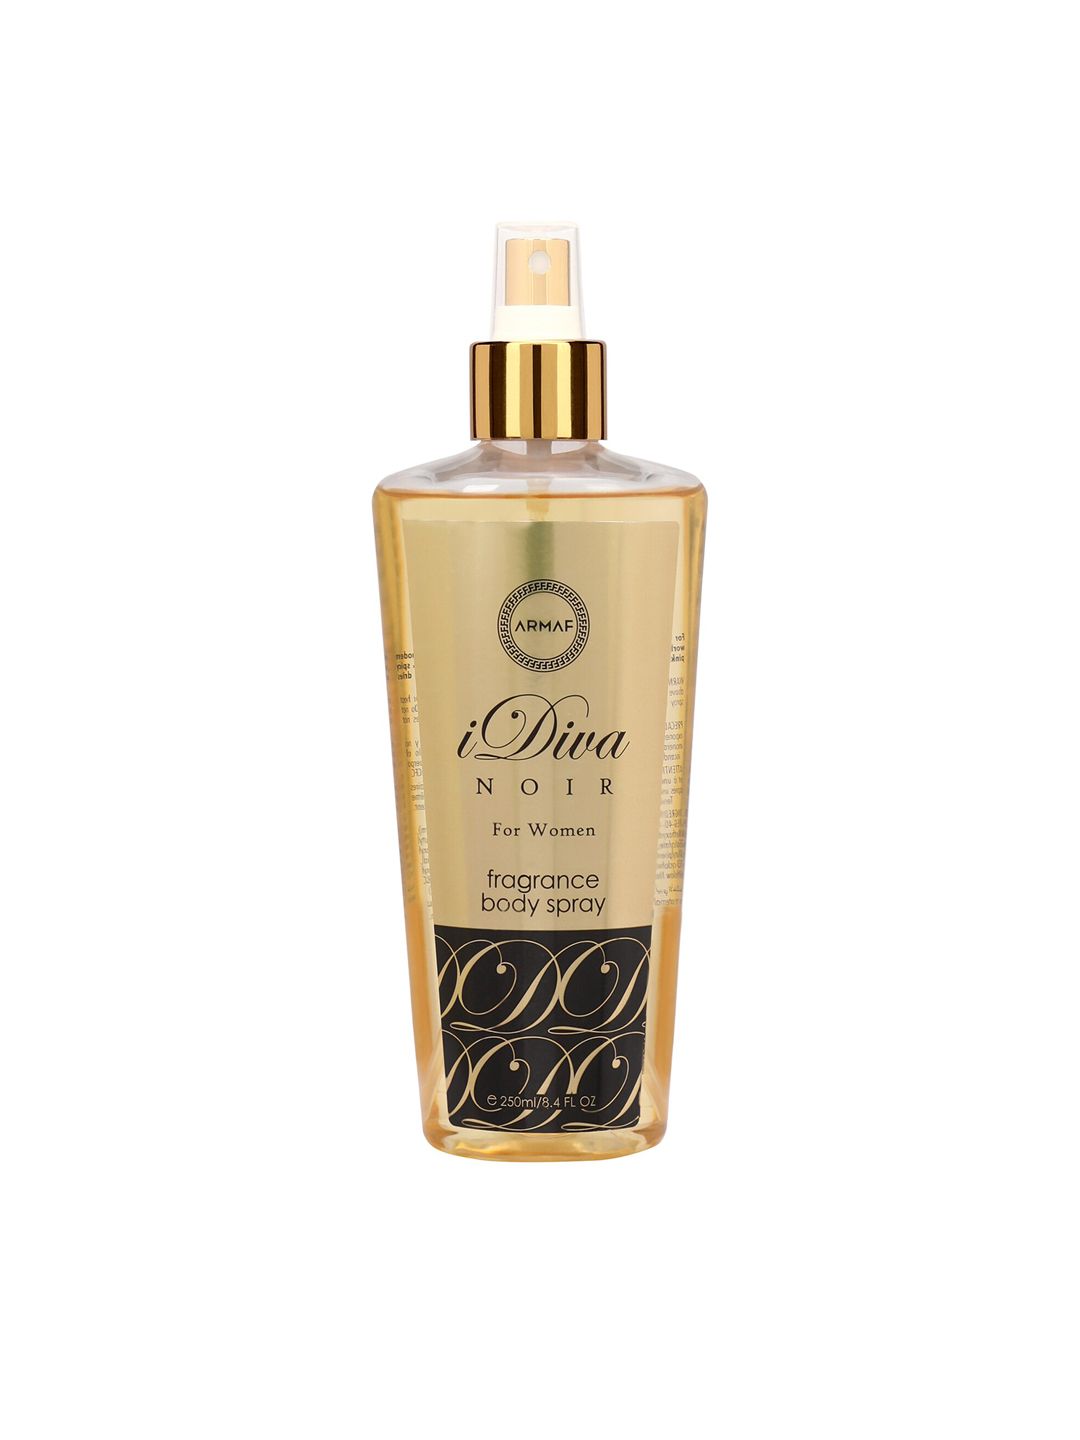 Armaf iDiva Noir Fragrance Body Spray - 250 ml Price in India